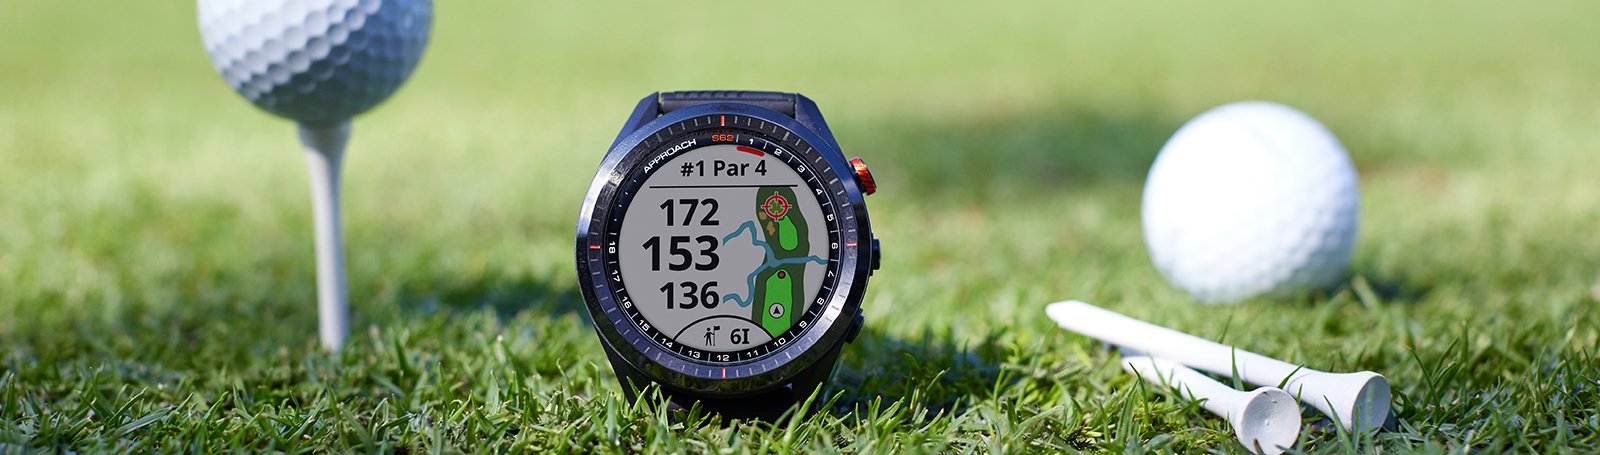  Golf Watch